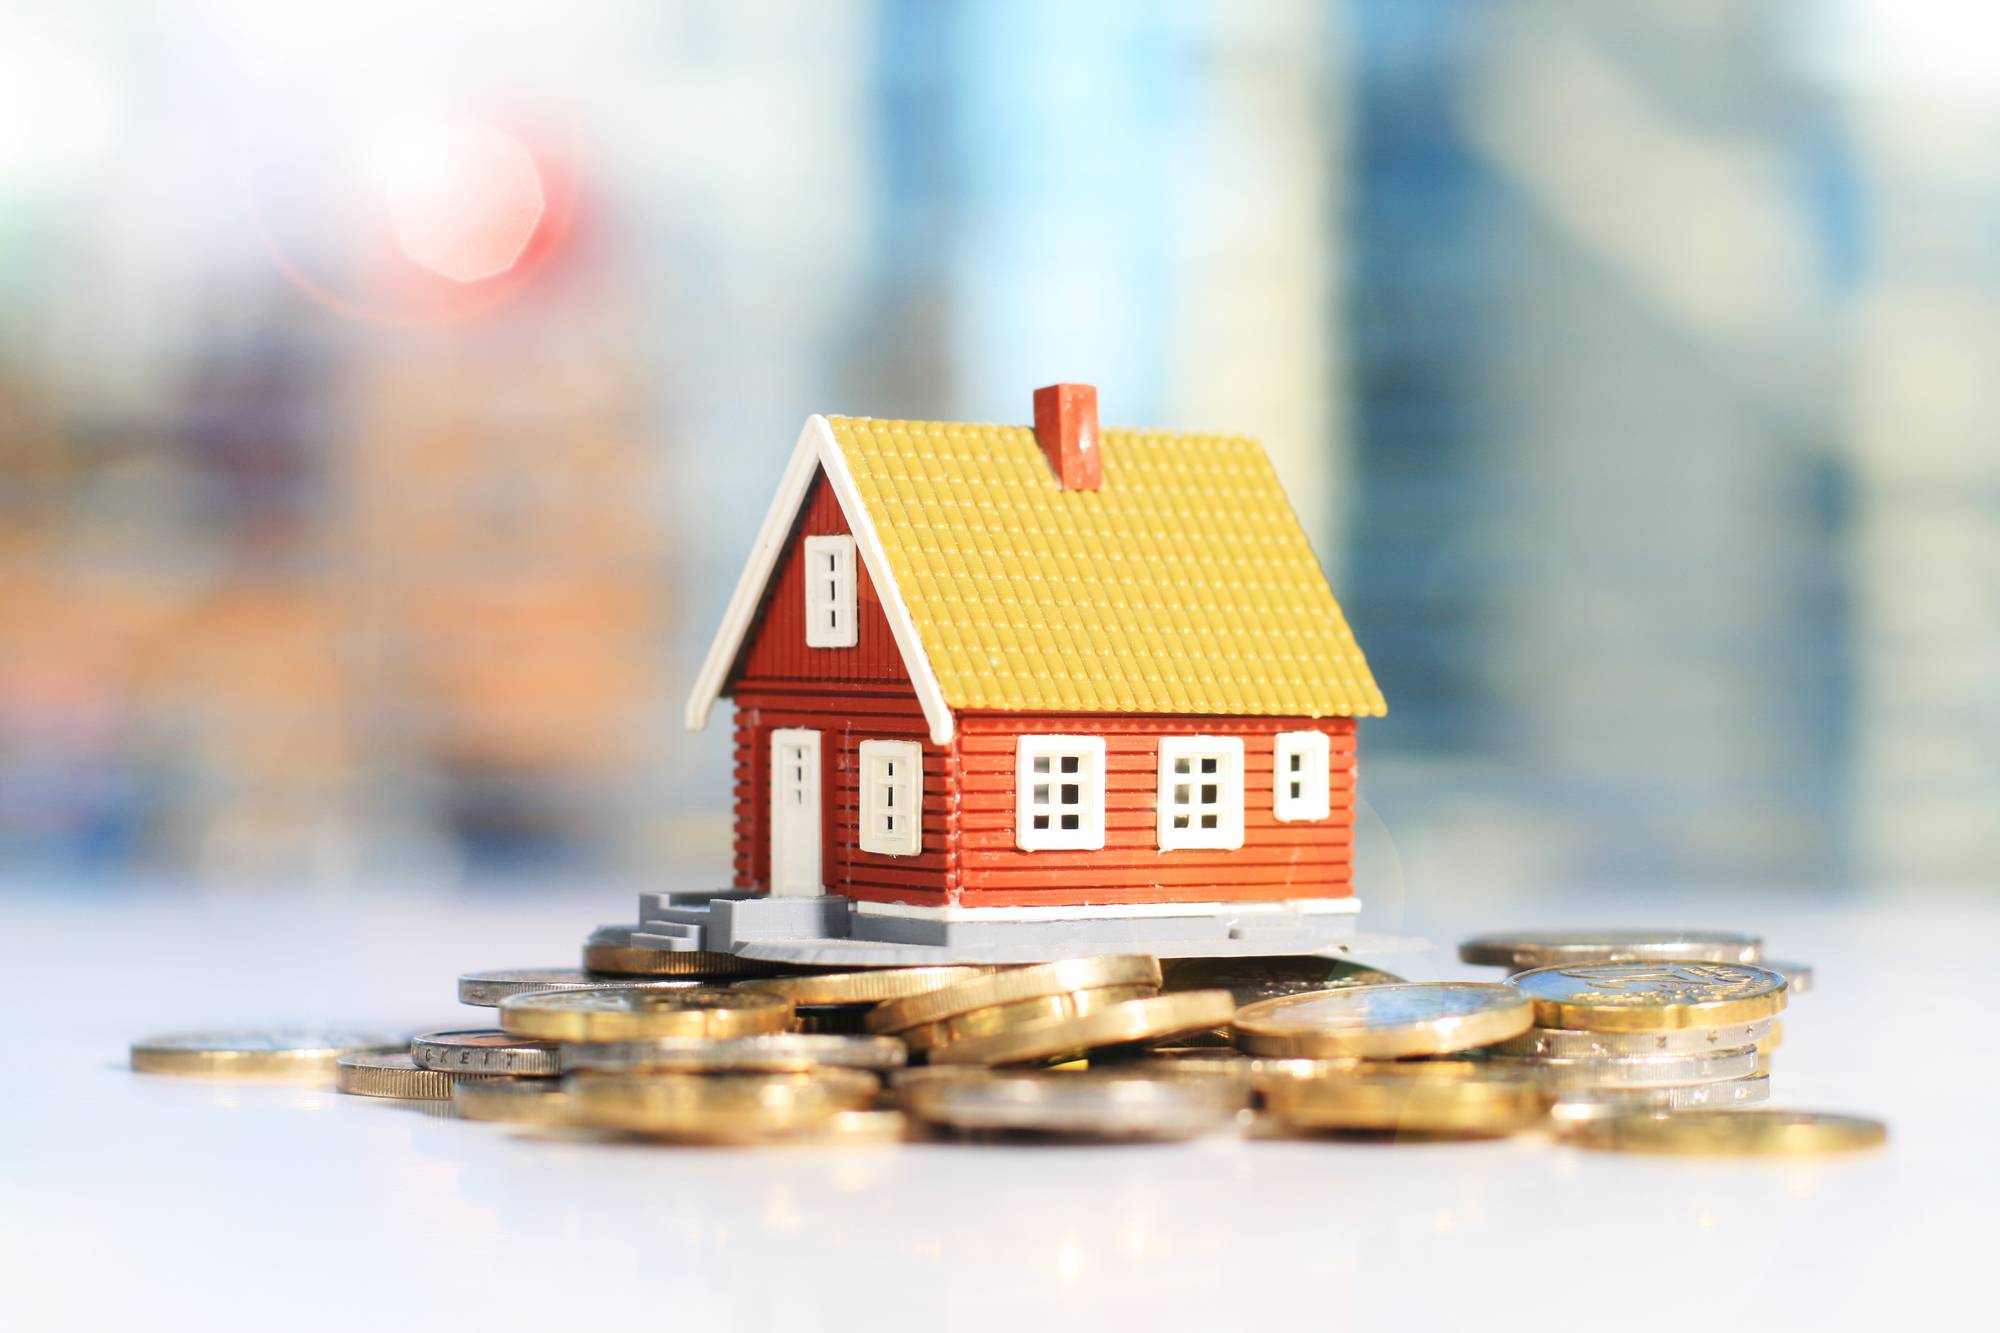 Недвижимость в австралии: цены в рублях, аренда, ипотека, налоги